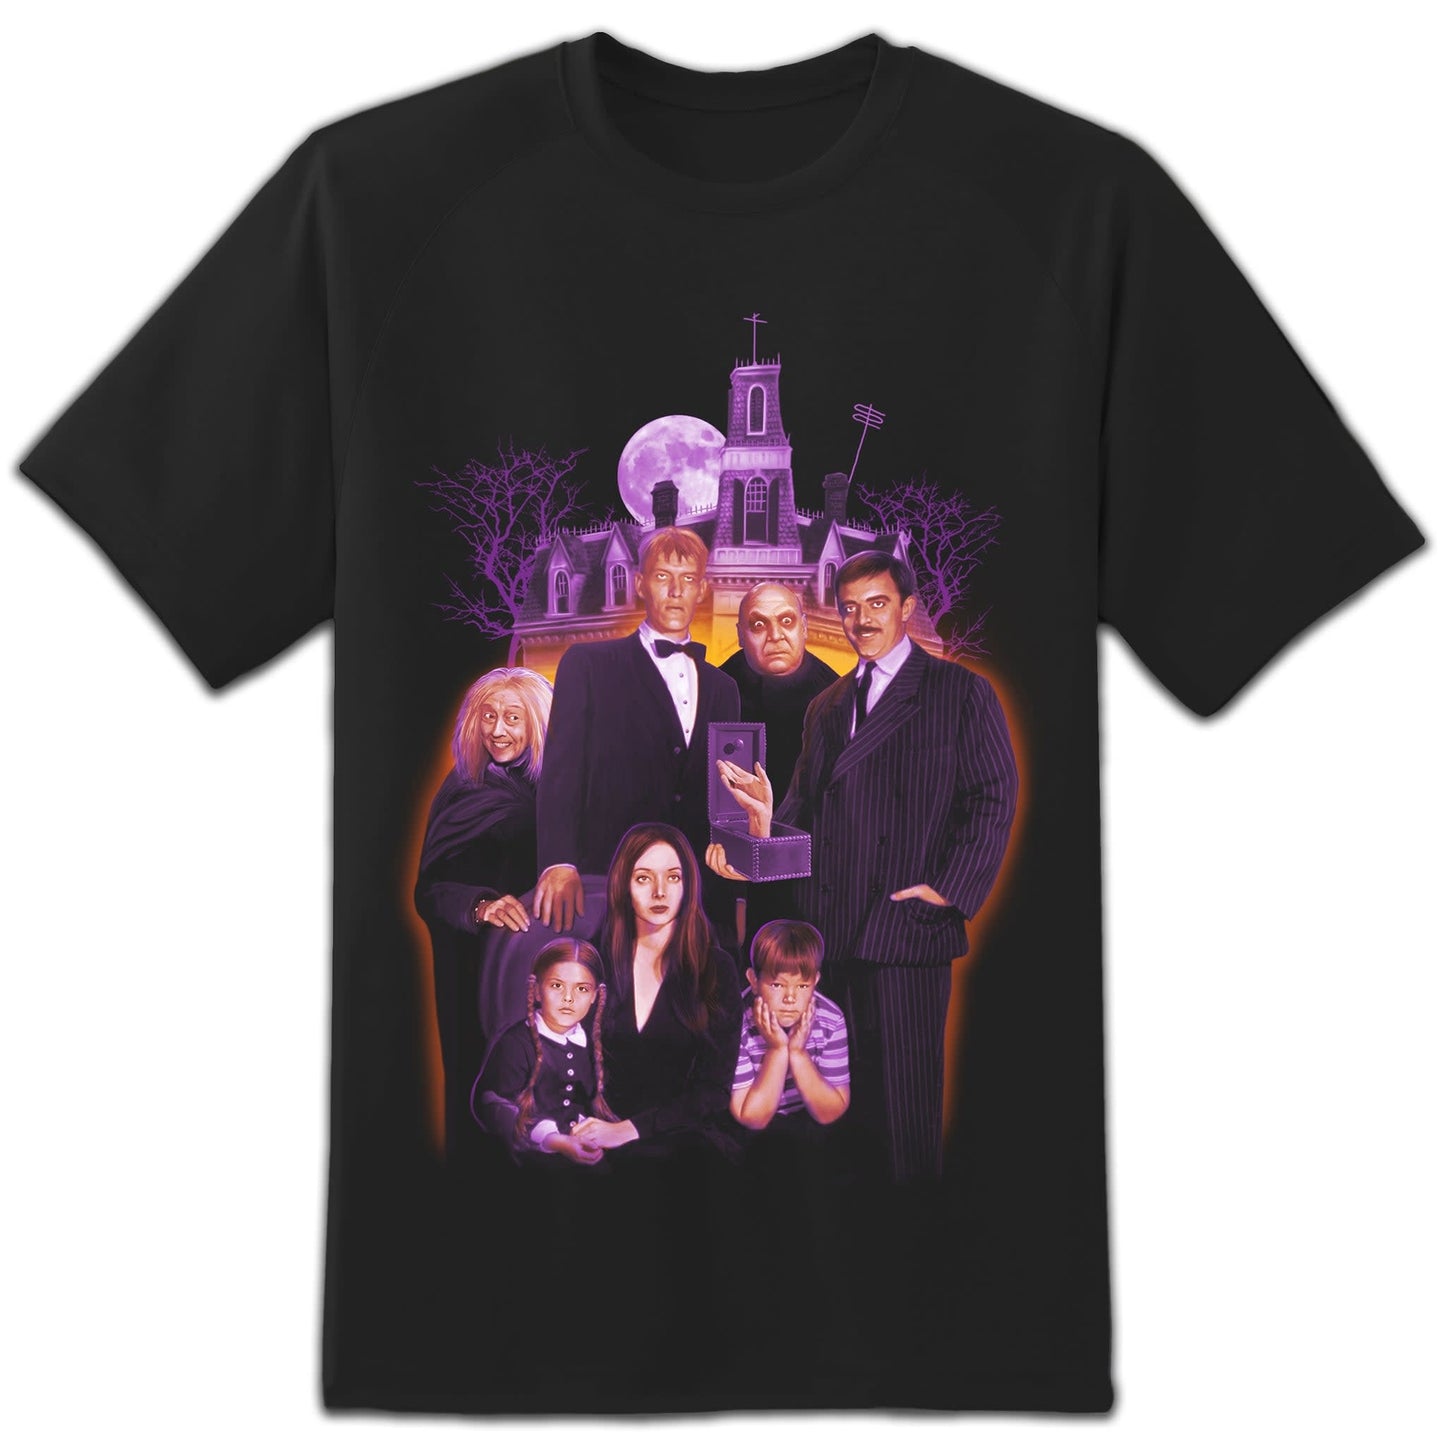 Halloween T-Shirt: "A" Family